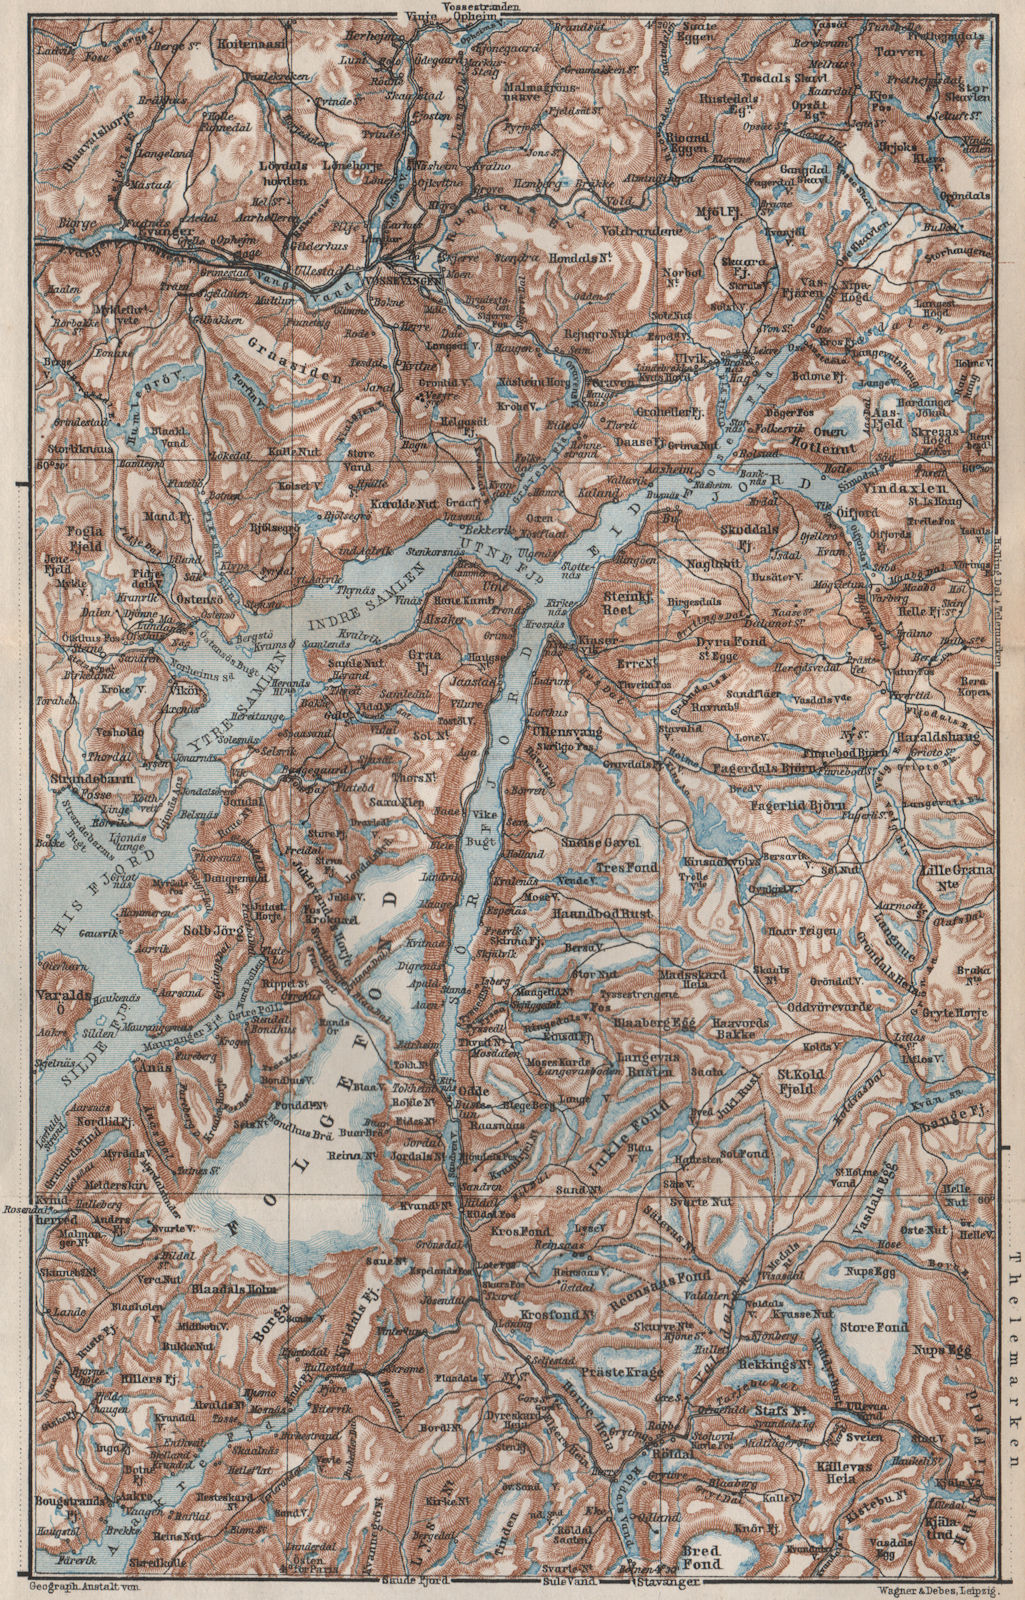 INNER HARDANGERFJORD topo-map. Folgefonna. Norway kart. BAEDEKER 1885 old